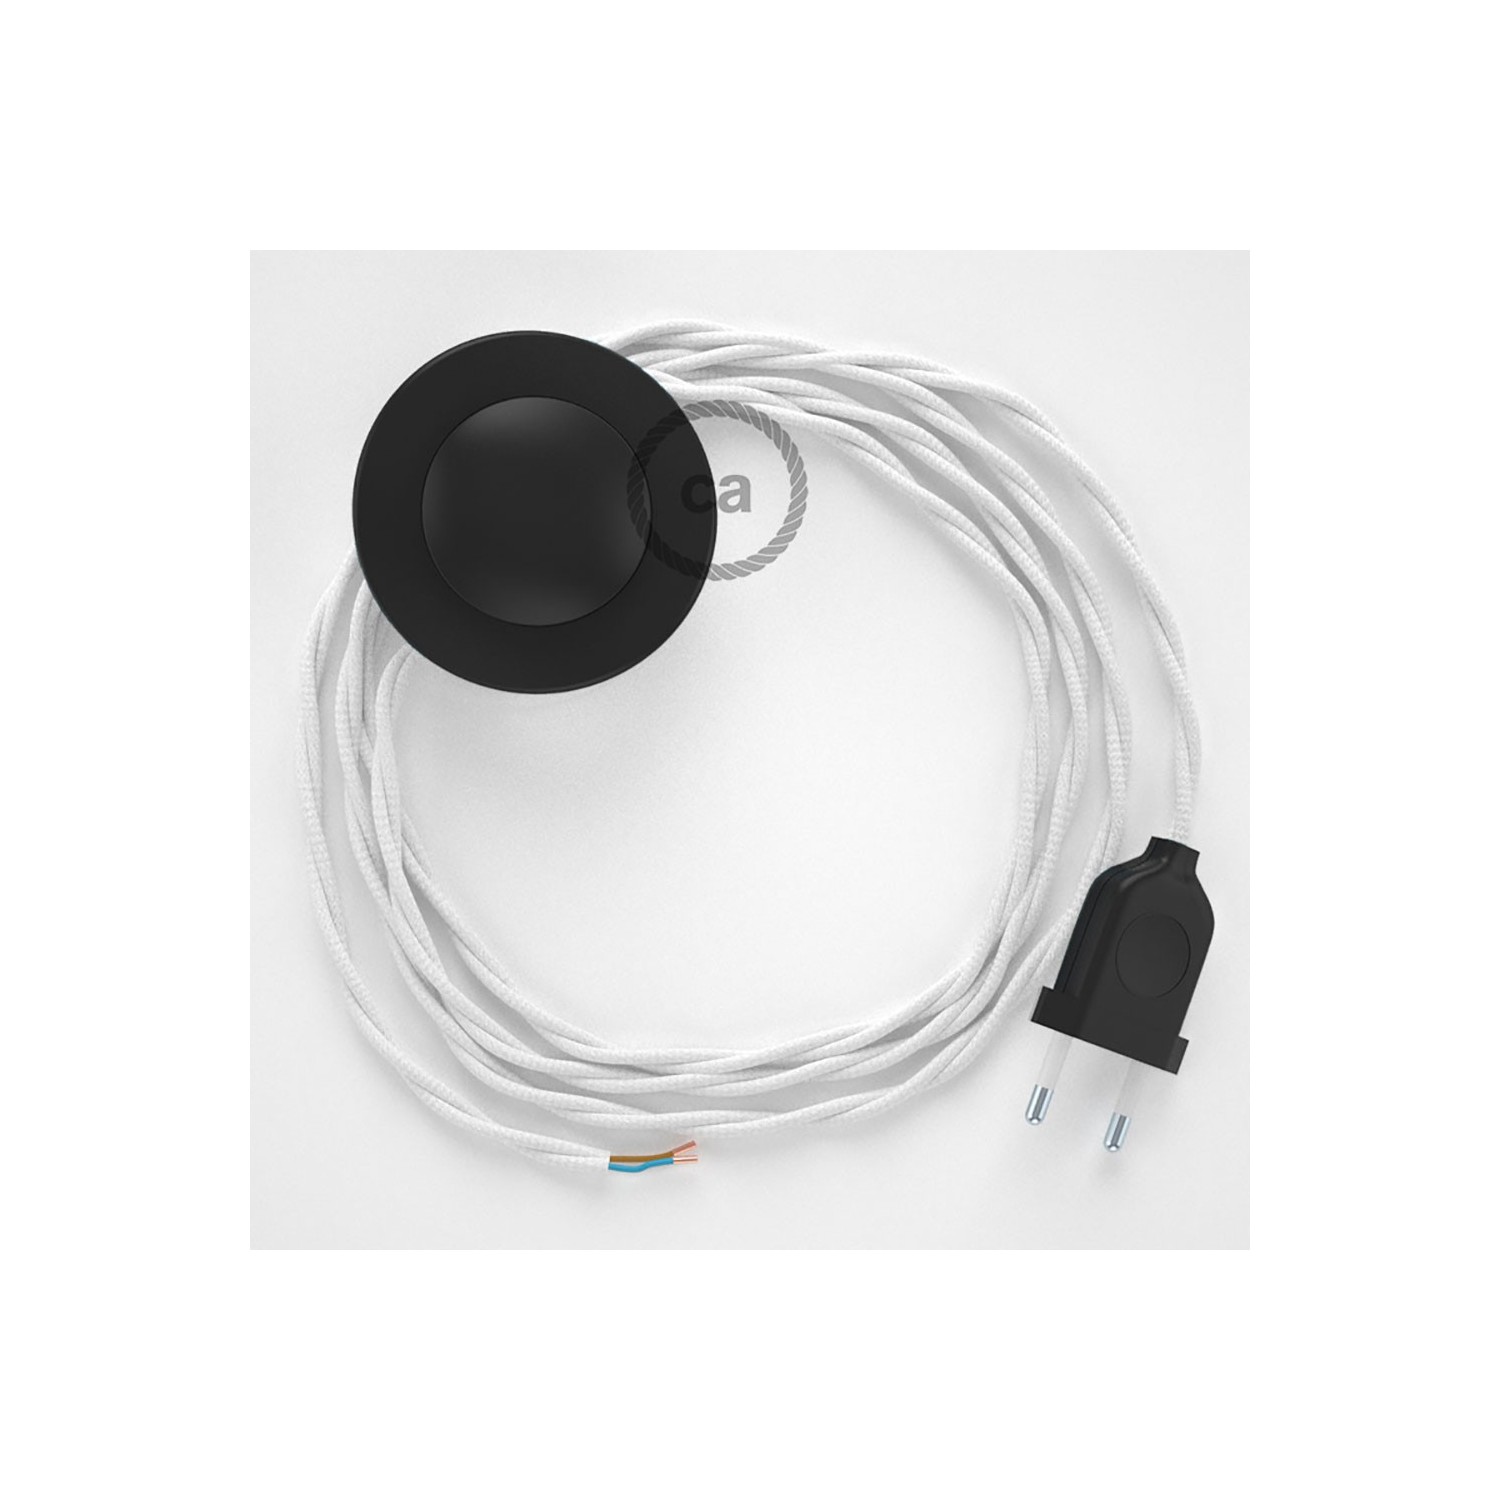 Cordon pour lampadaire, câble TM01 Effet Soie Blanc 3 m. Choisissez la couleur de la fiche et de l'interrupteur!